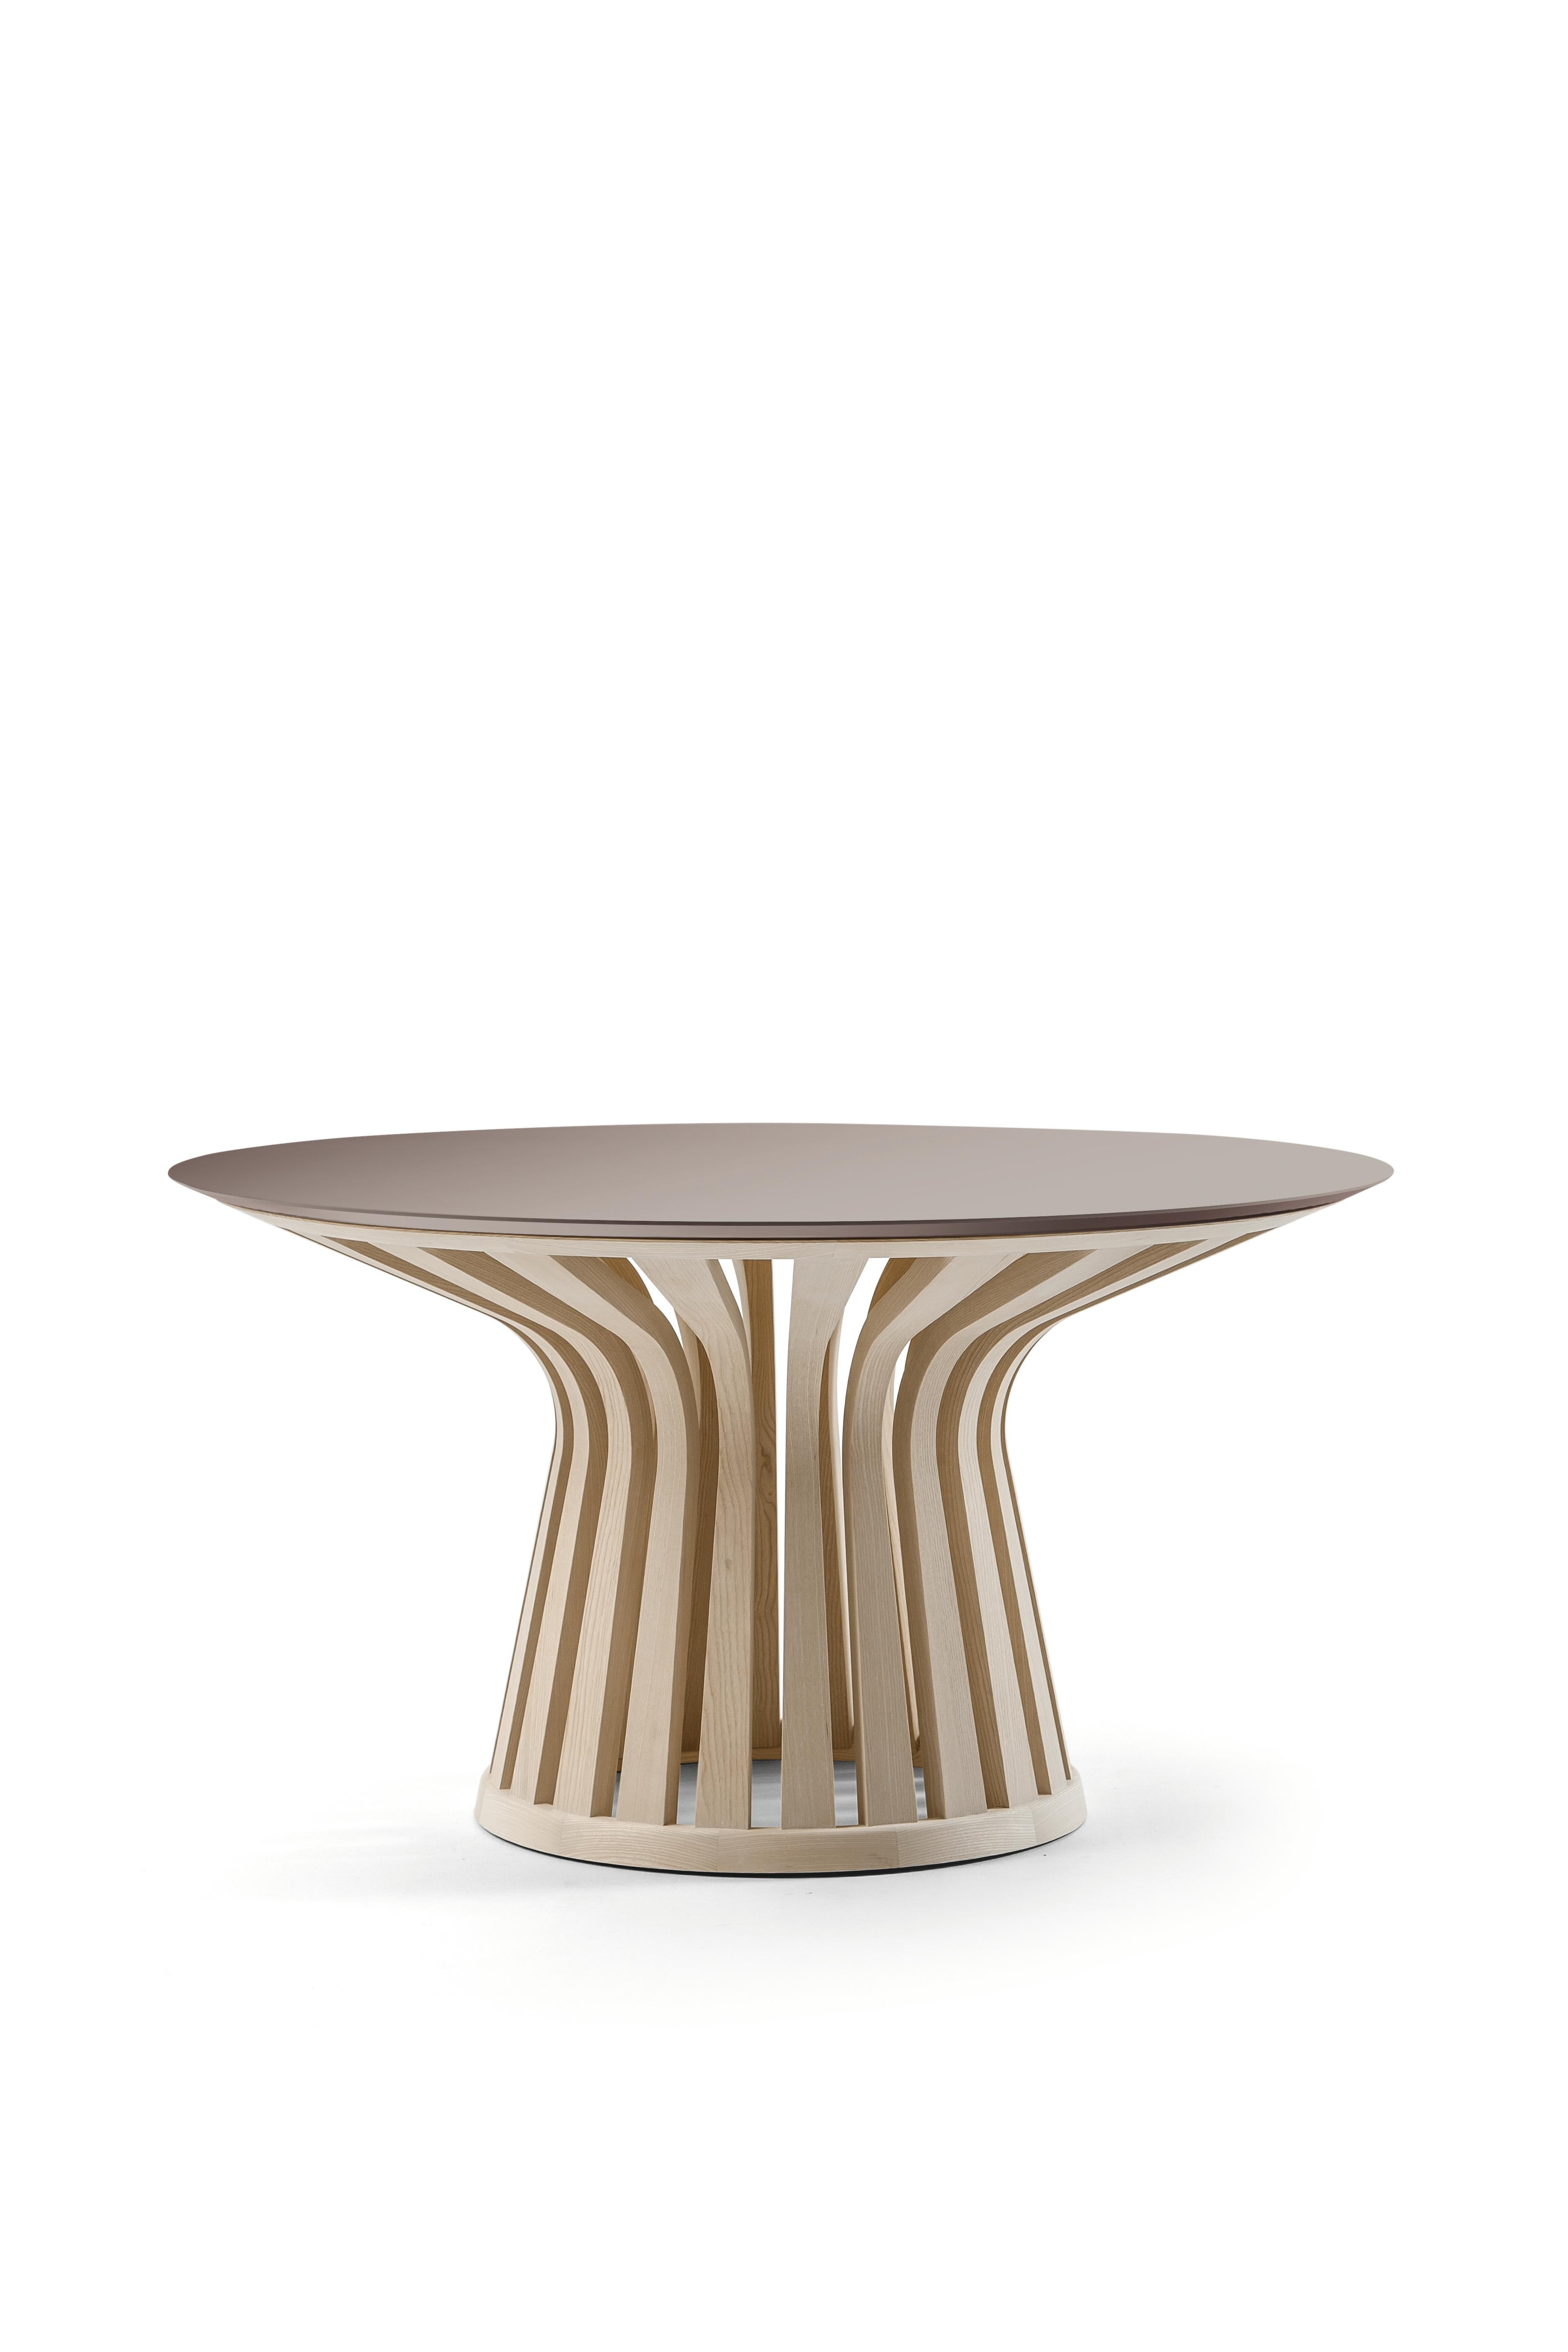 Lebeau-Holztisch von Patrick Jouin 
Hergestellt von Cassina in Italien

Lebeau Wood ist eine Weiterentwicklung des kultigen und innovativen Lebeau-Tisches. Während die Abmessungen und Konturen des Originals beibehalten werden, wird für den Sockel